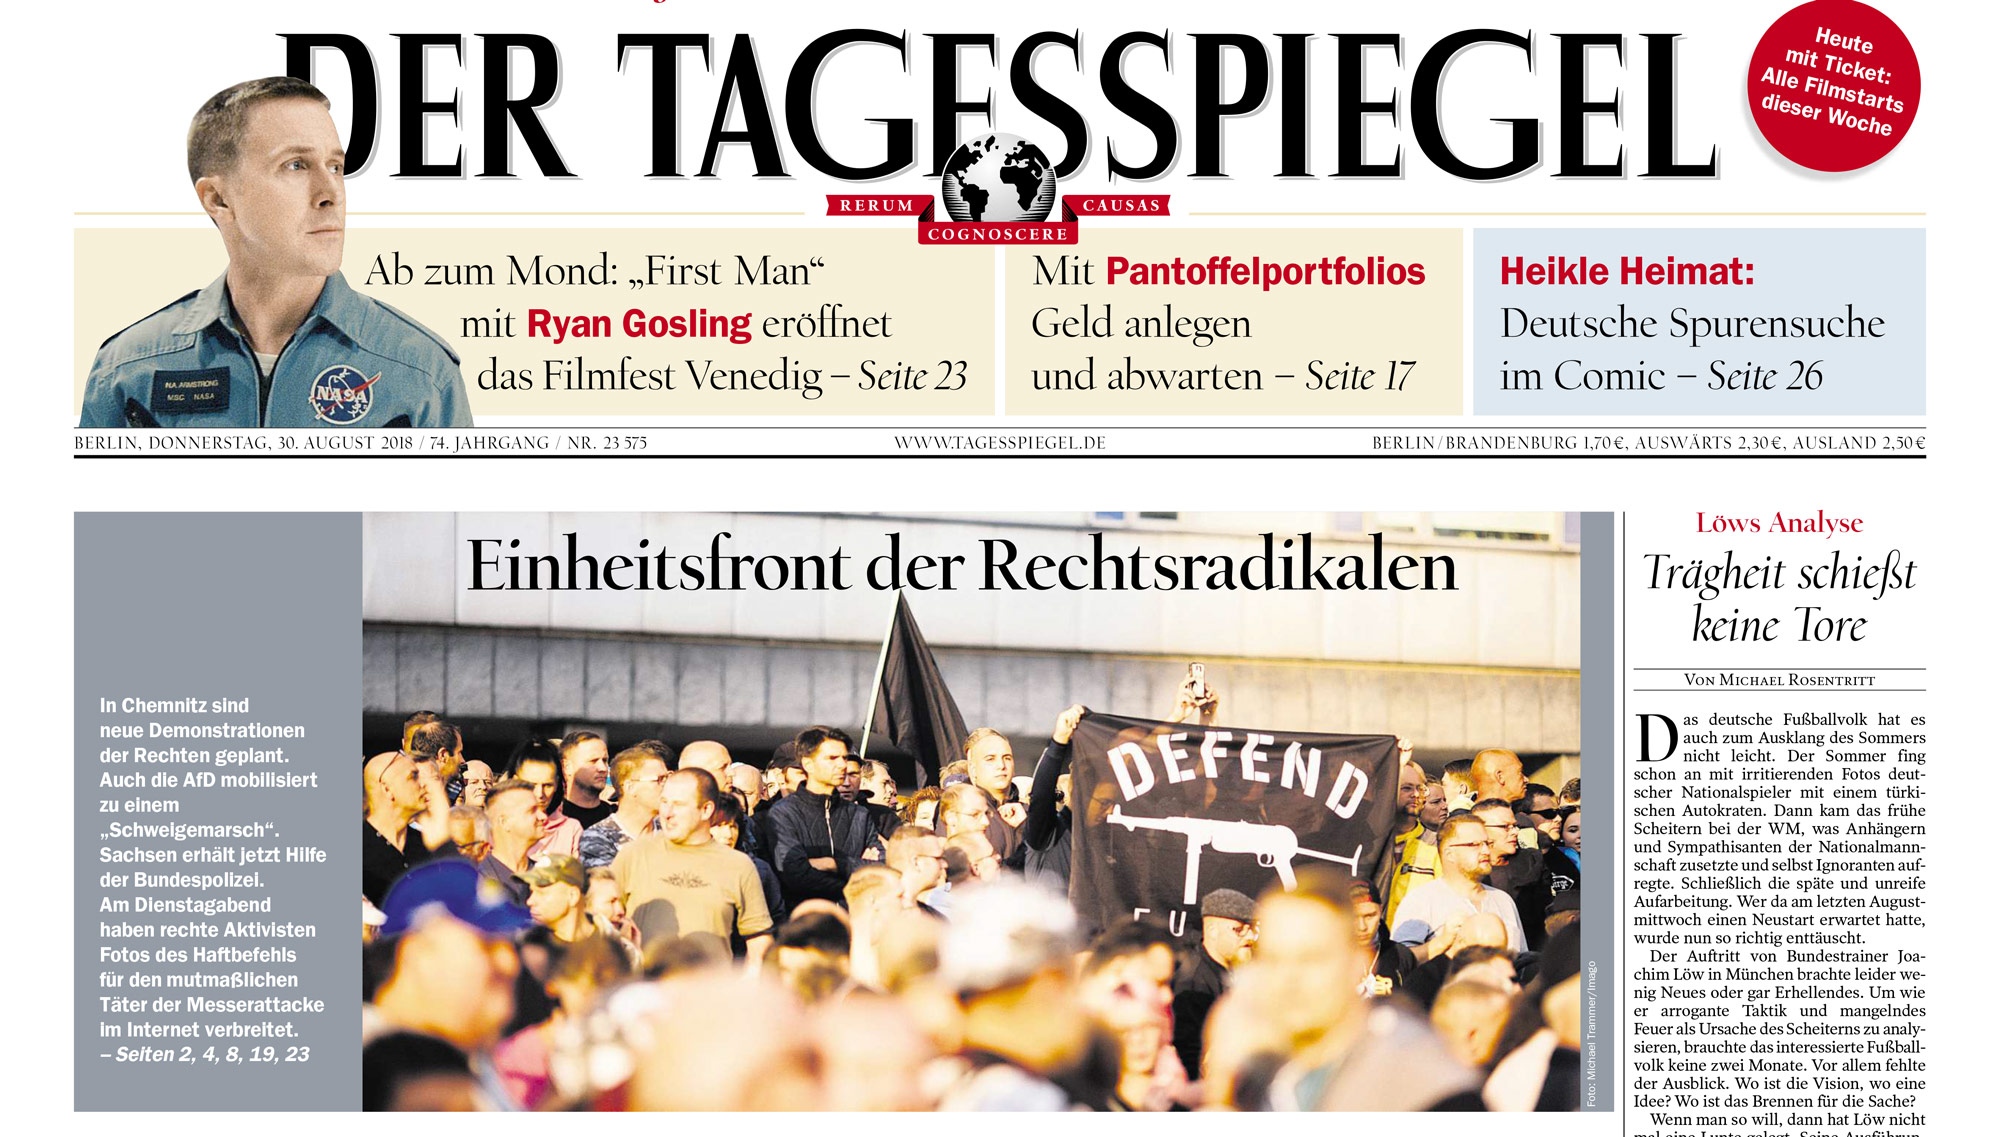 Tearsheets - Der Tagesspiegel - 08/30/18